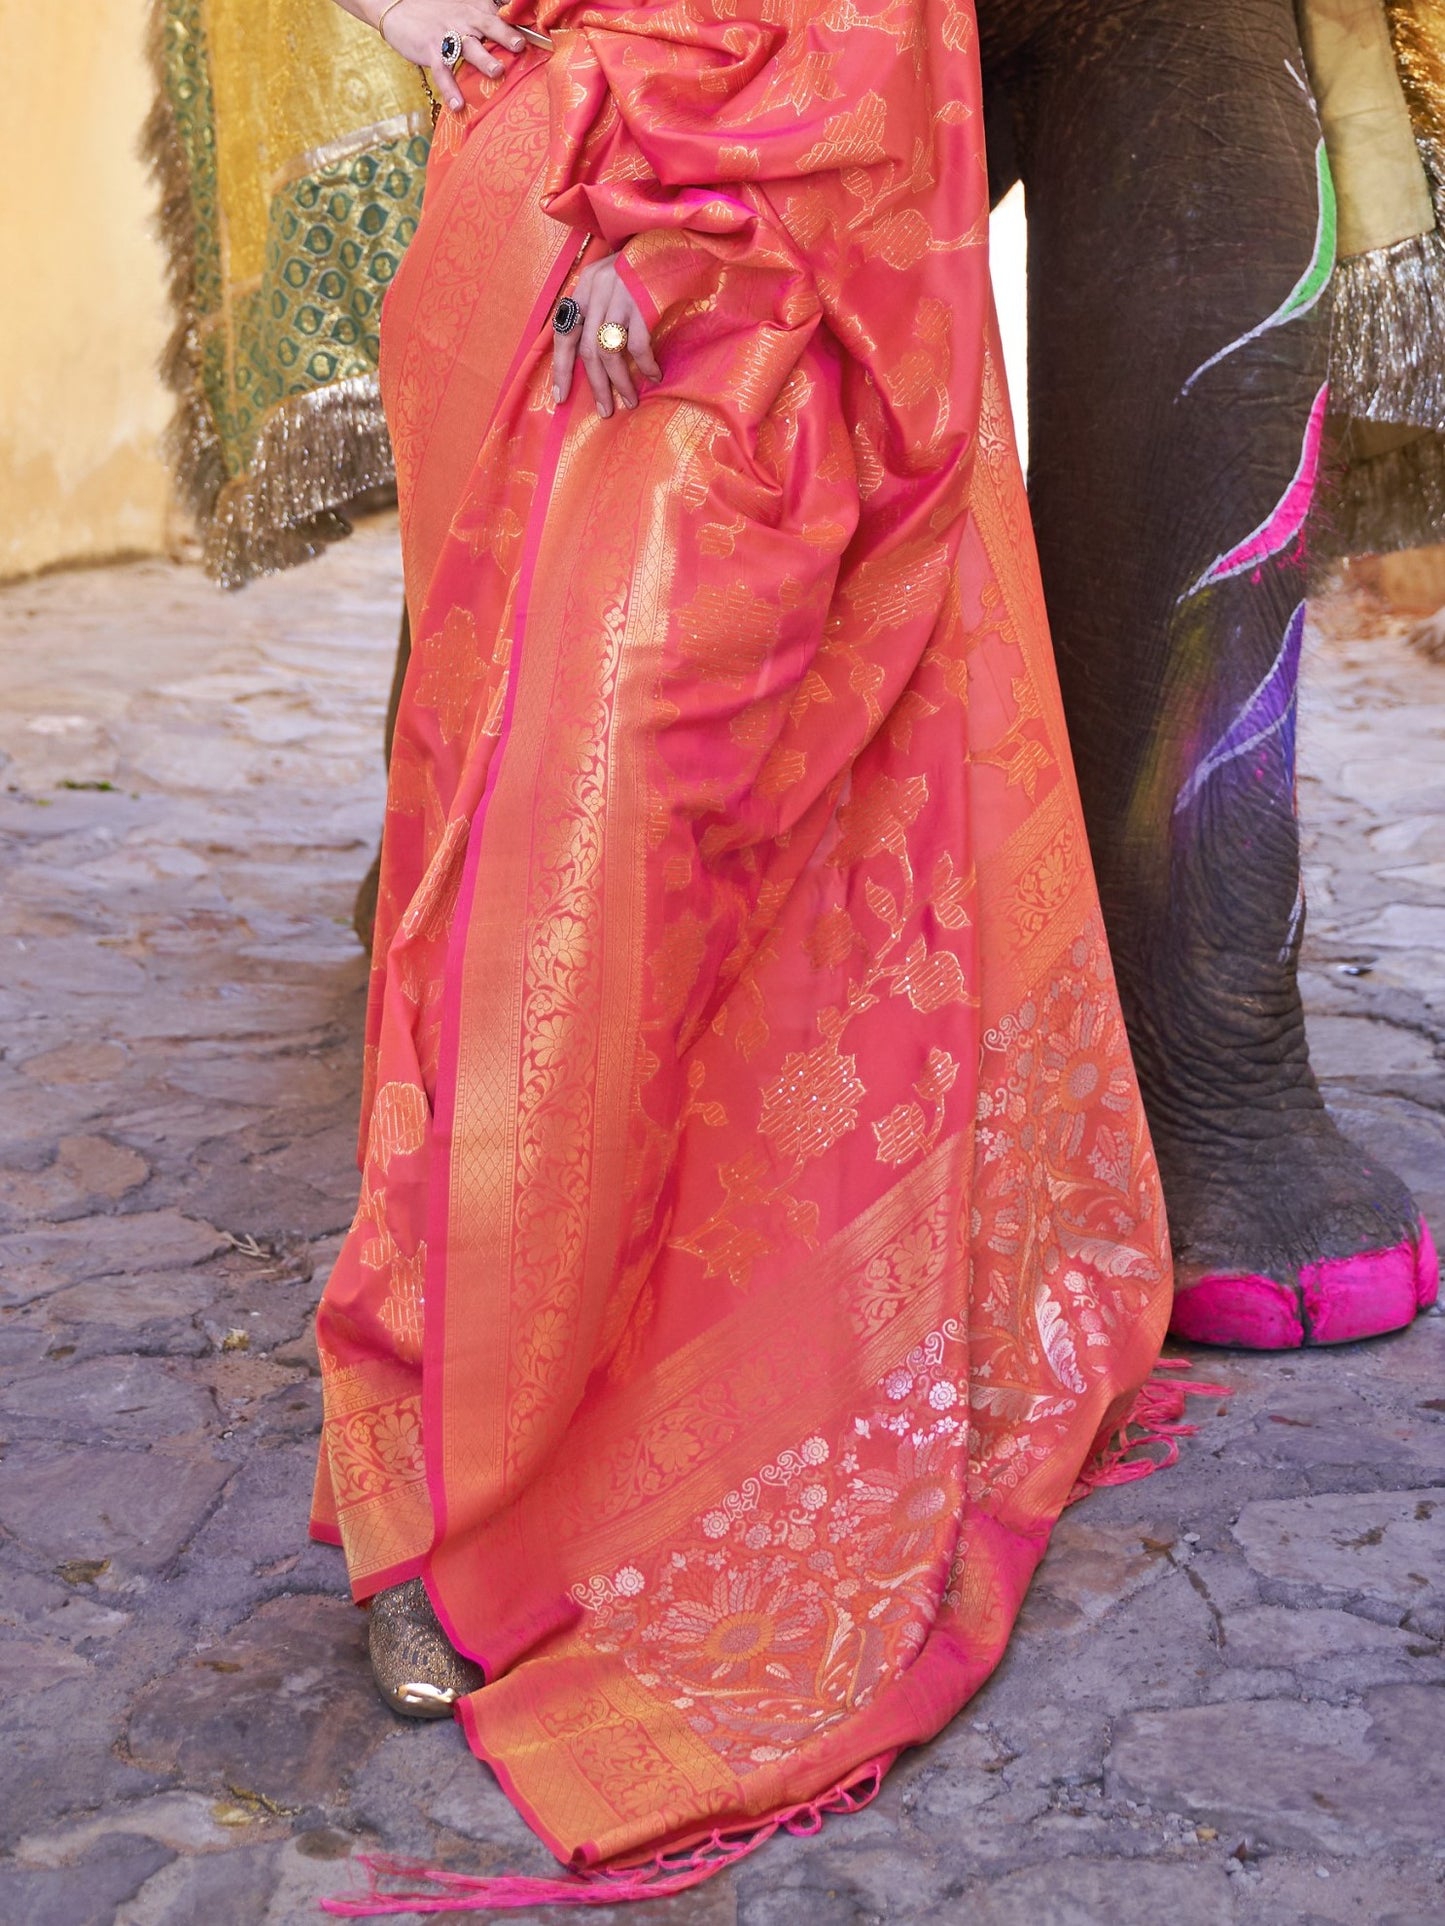 Duel Tone Pink Woven Banarasi Saree